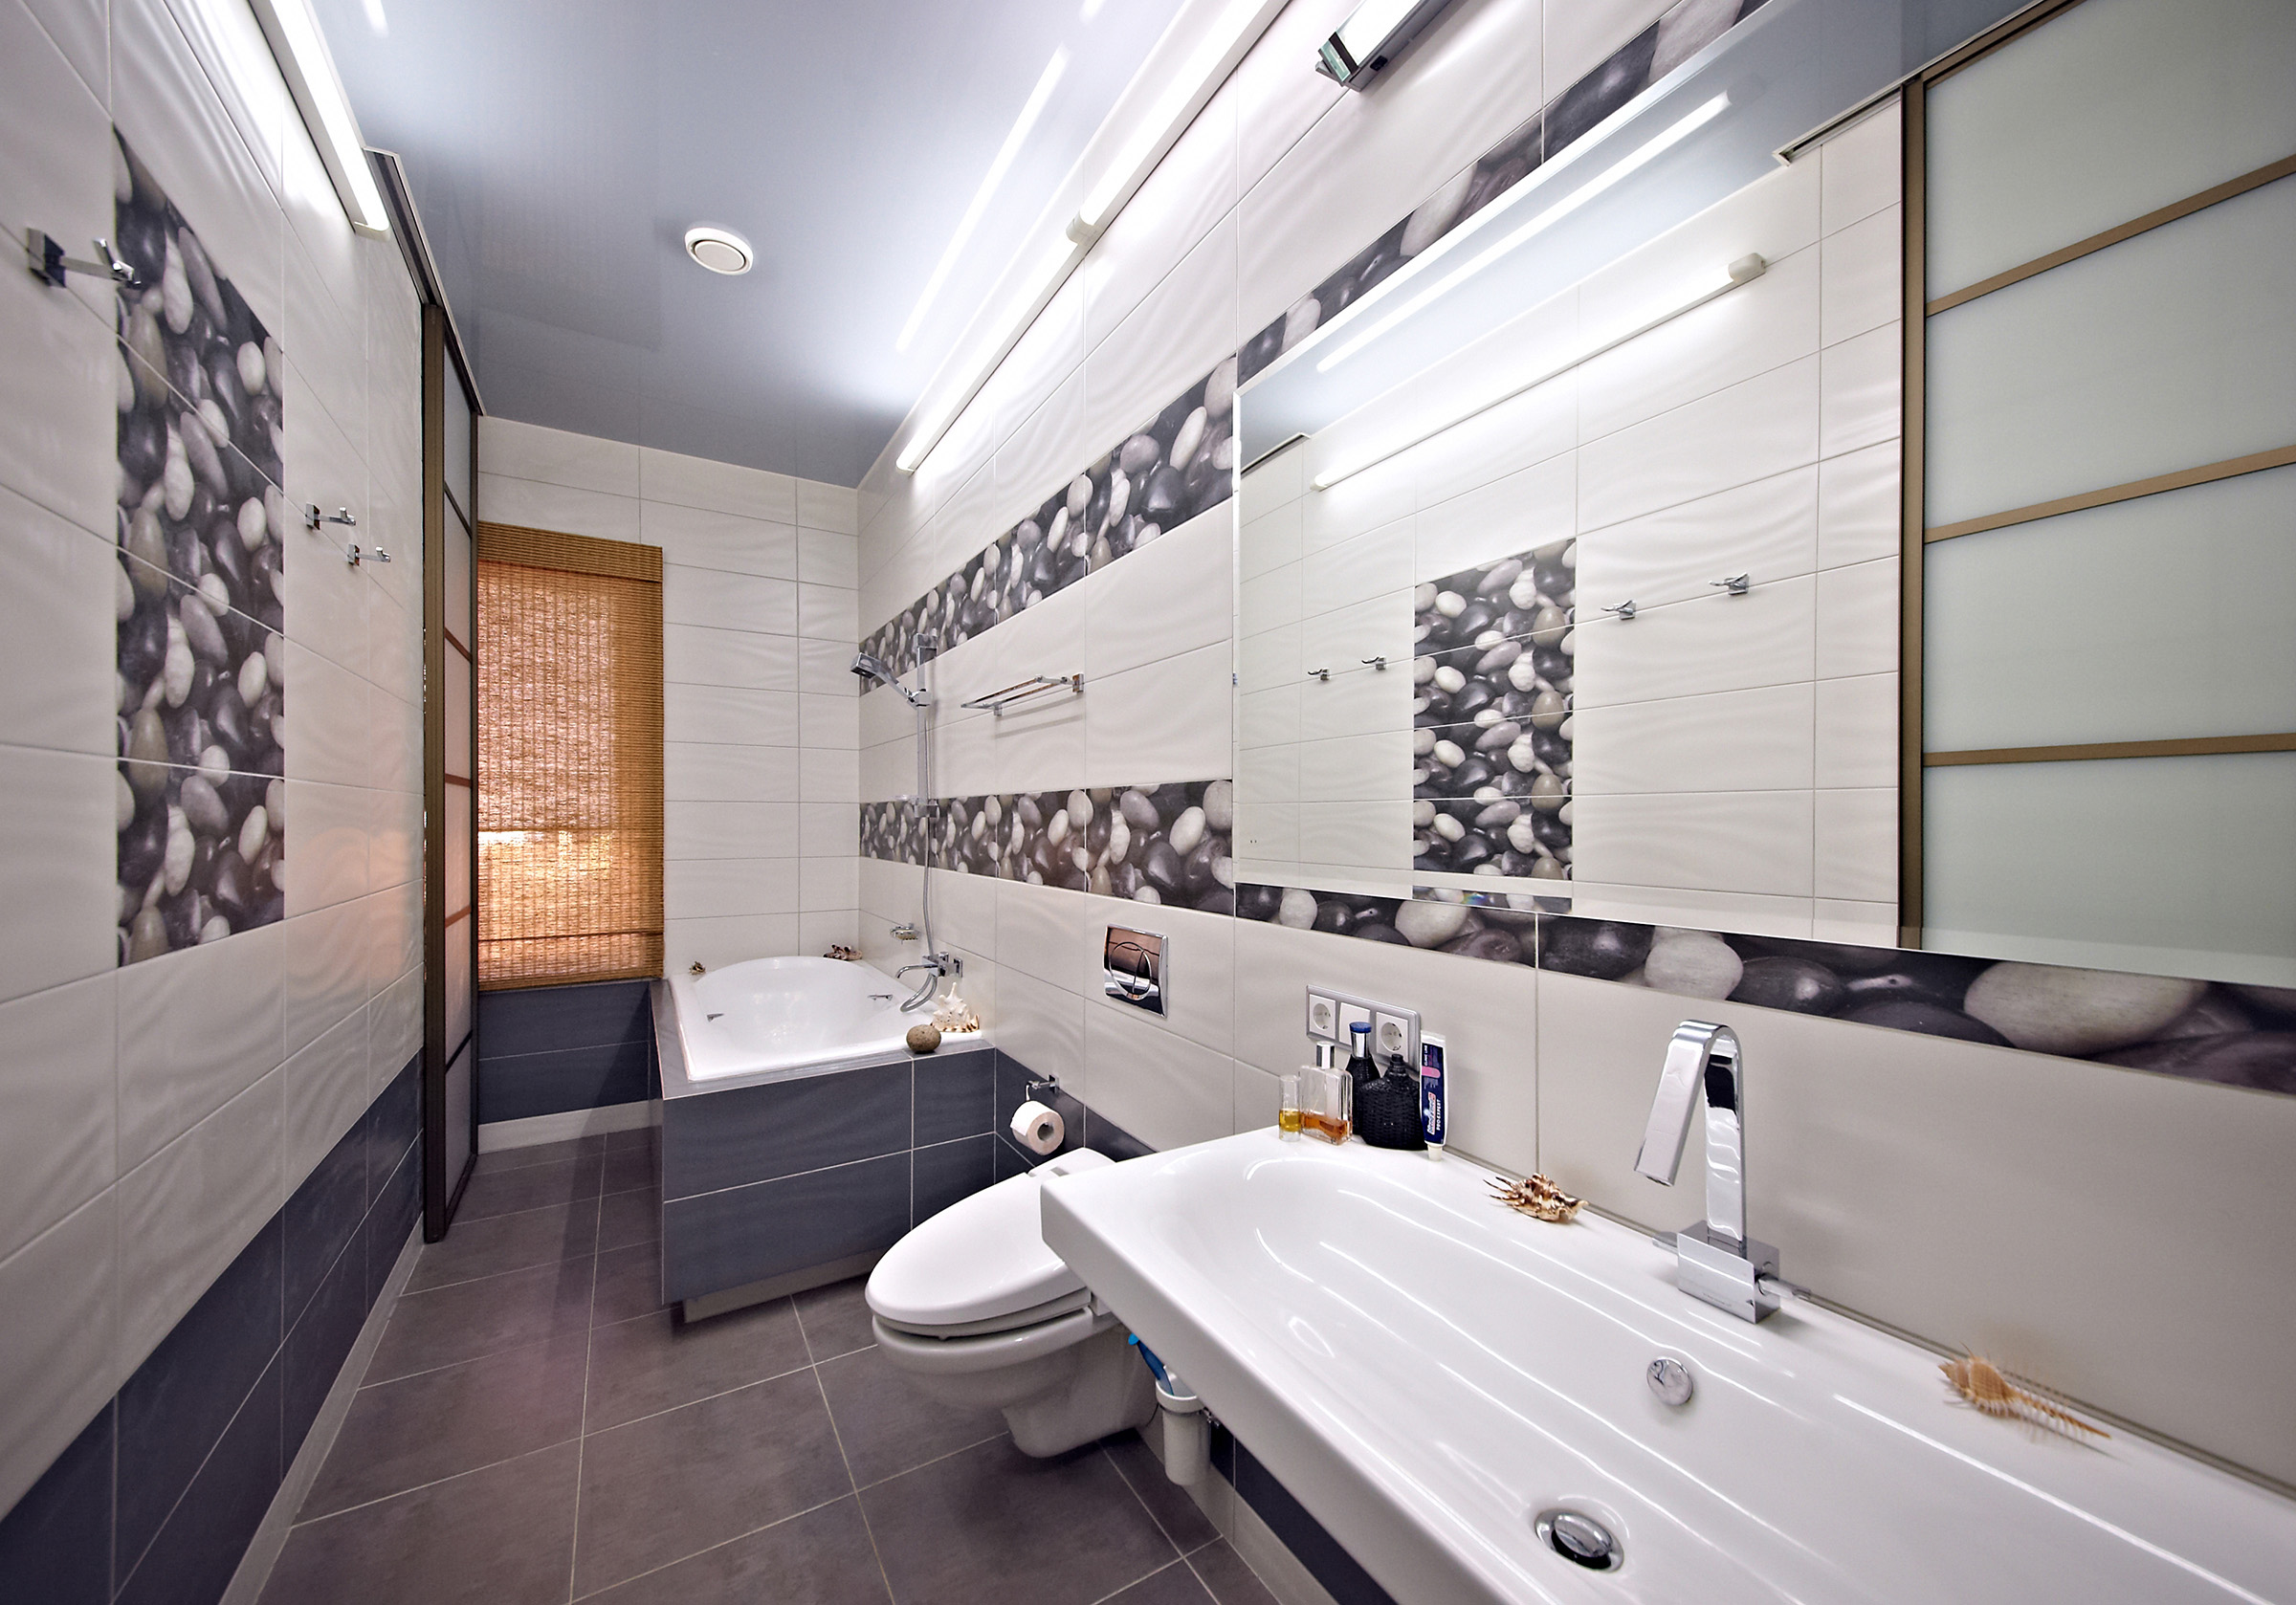 Ванная комната. Плитка с волнистой фактурой. Экран ванной. Зеркало с фацетом. Дизайн интерьера.